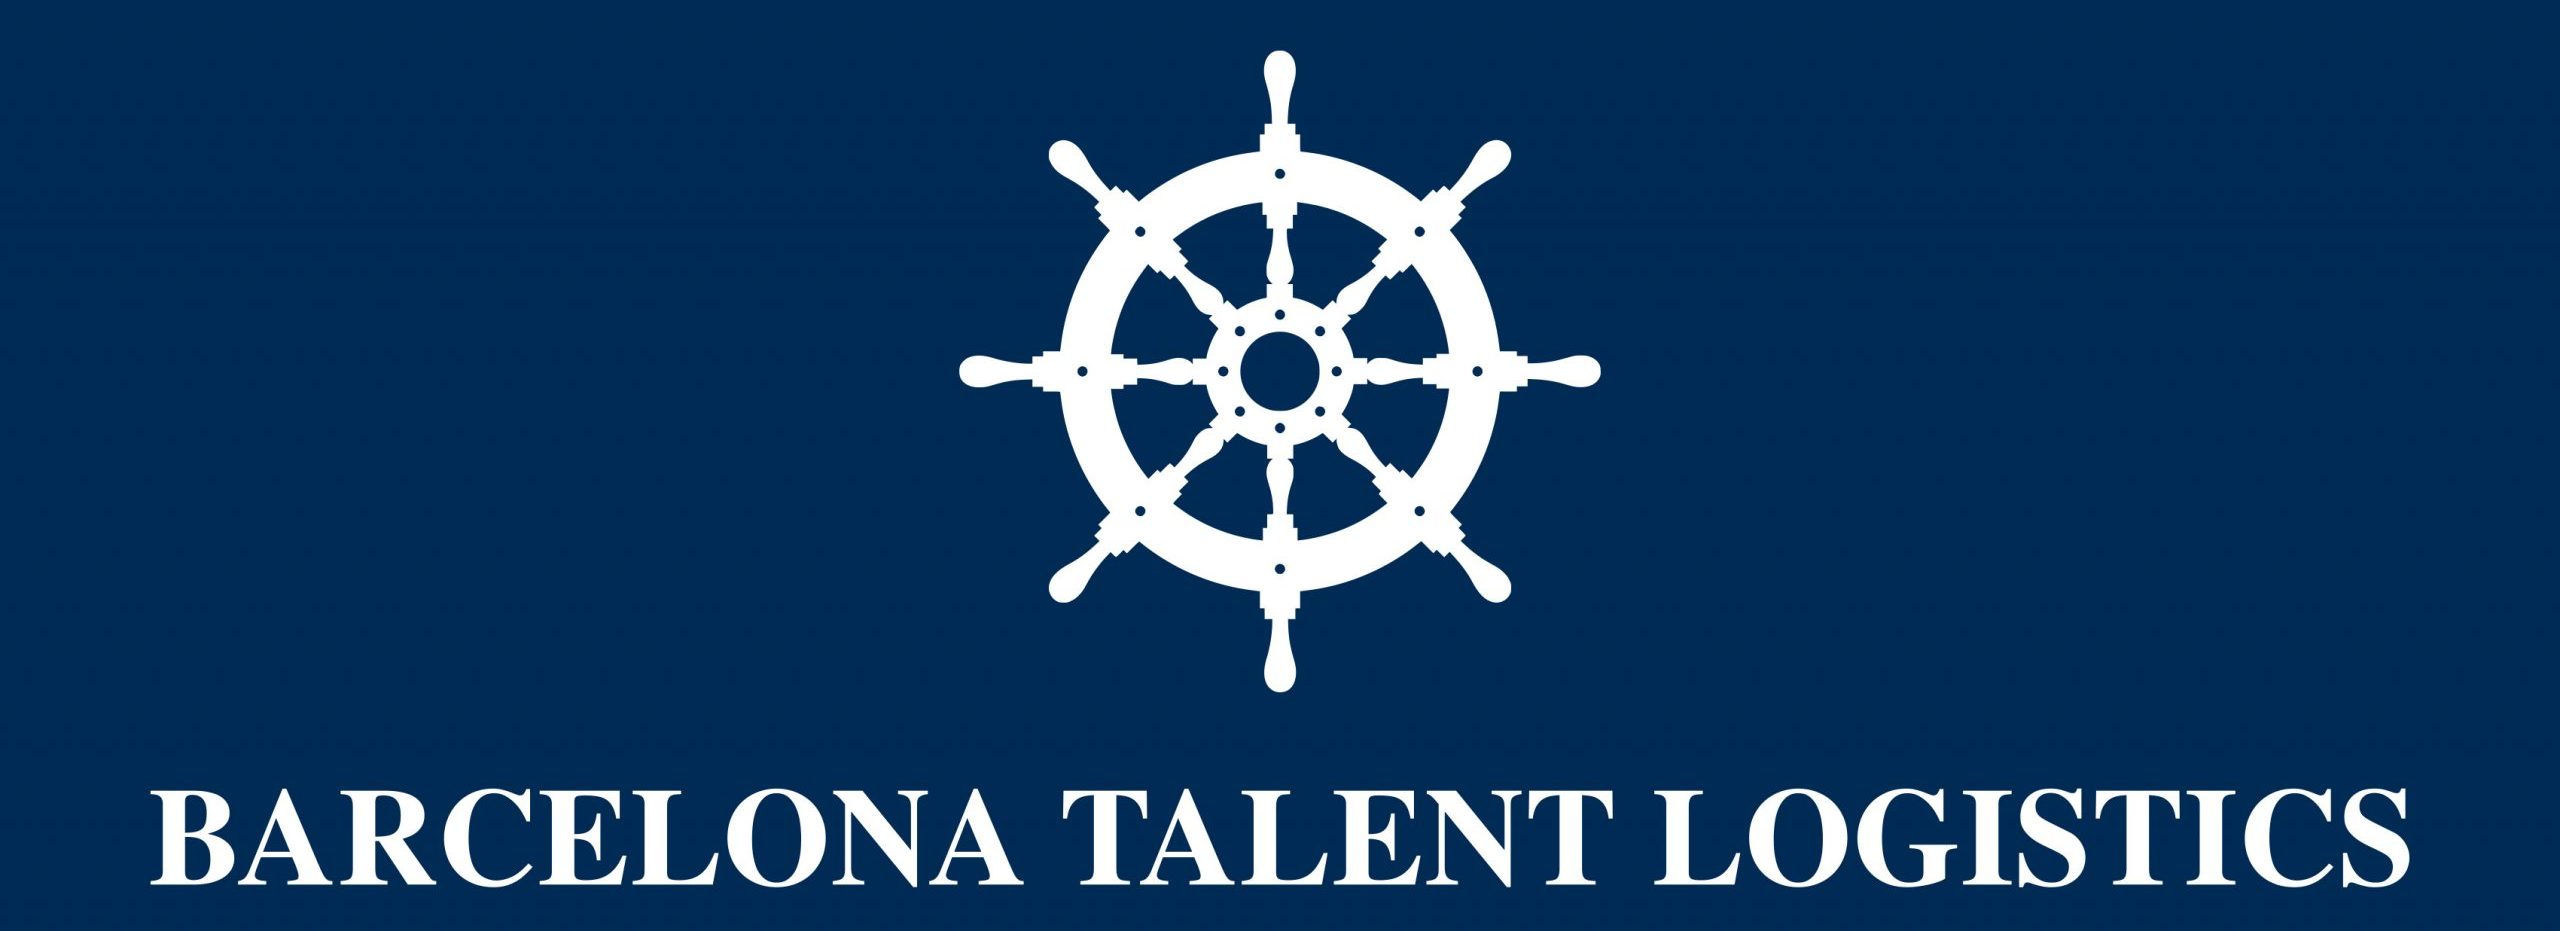 Barcelona Talent Logistics